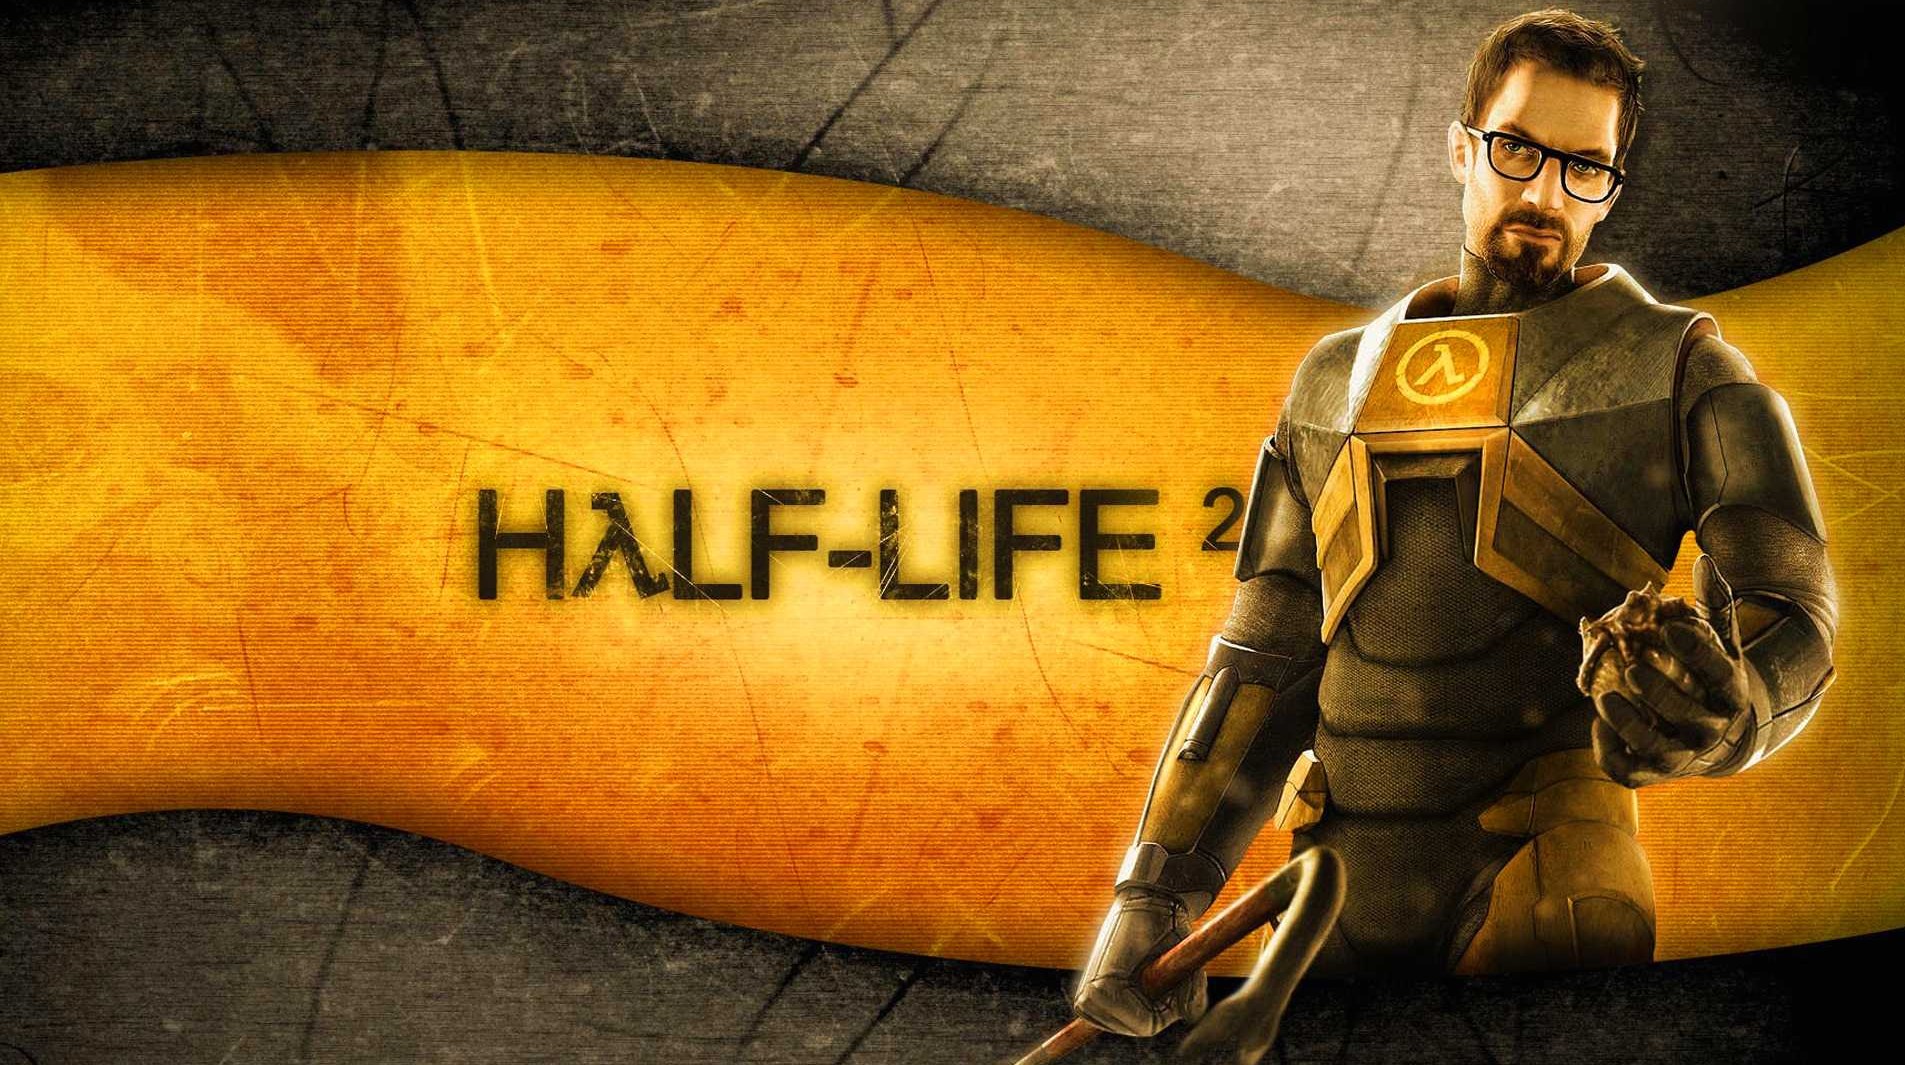 Половина-жизни 2 (half-life 2) ep.2